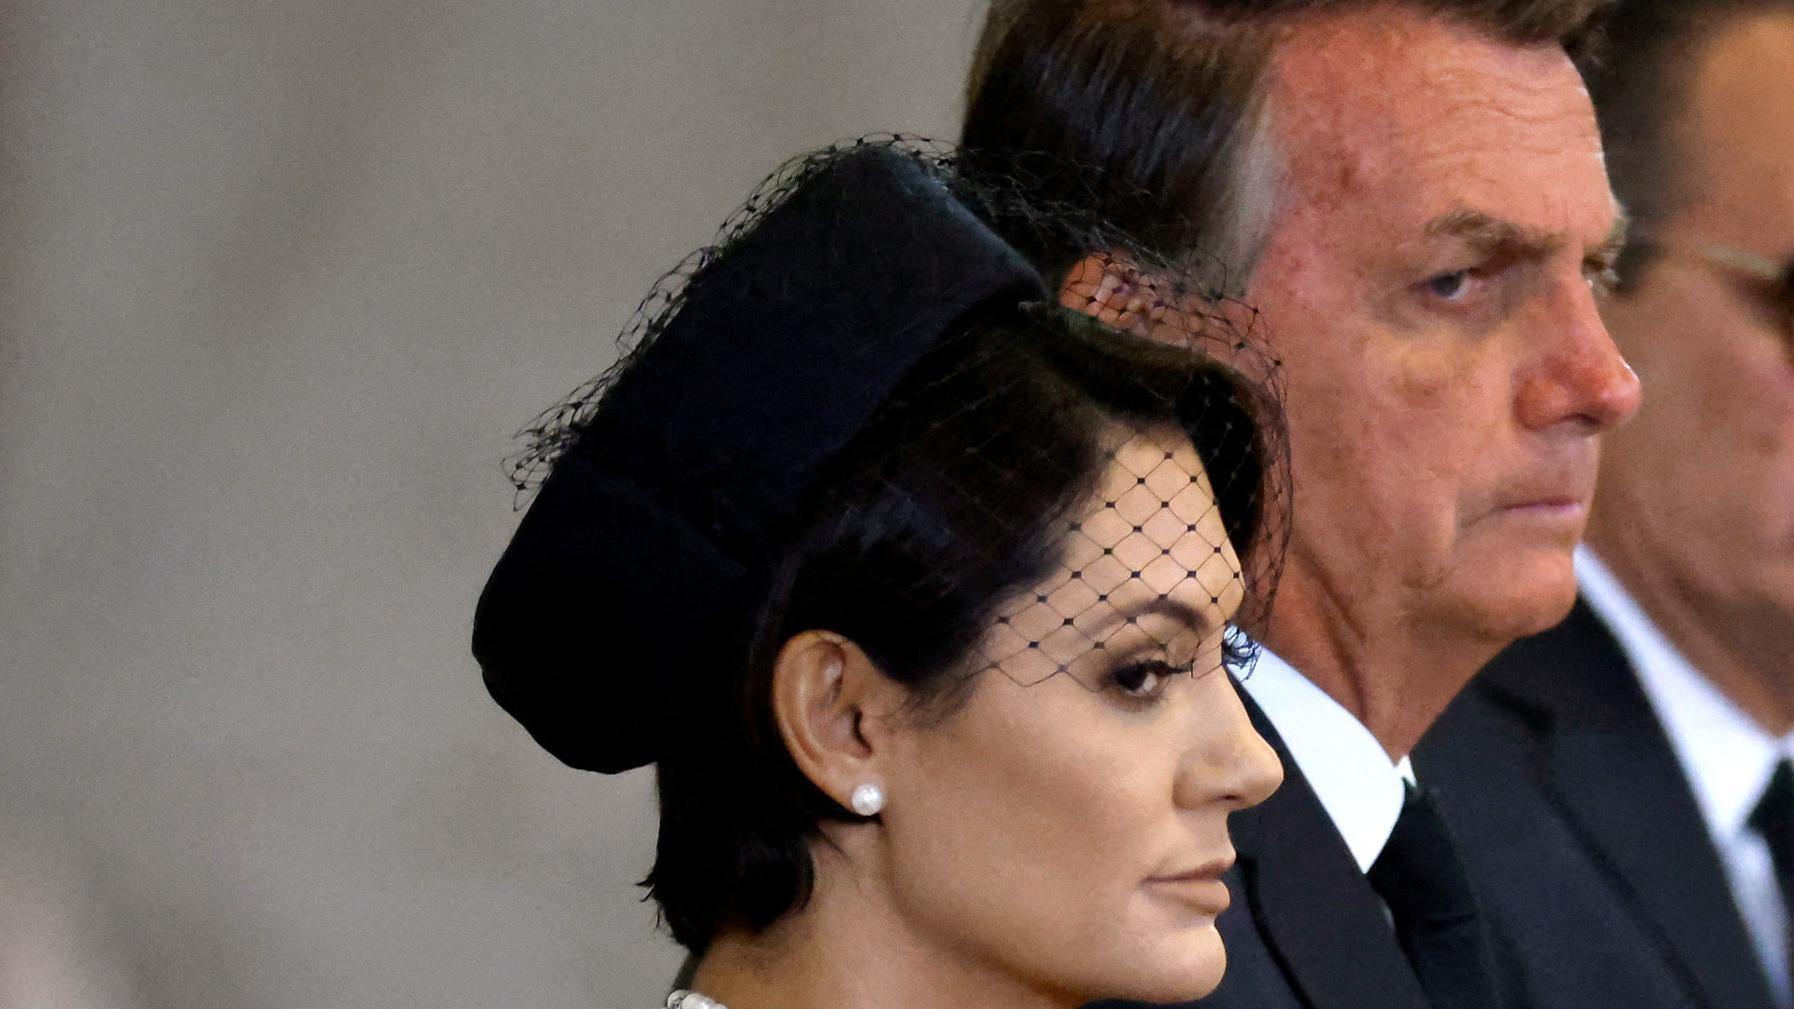 Michelle e Jair Bolsonaro com olhar fechado e trajes formais e fúnebres